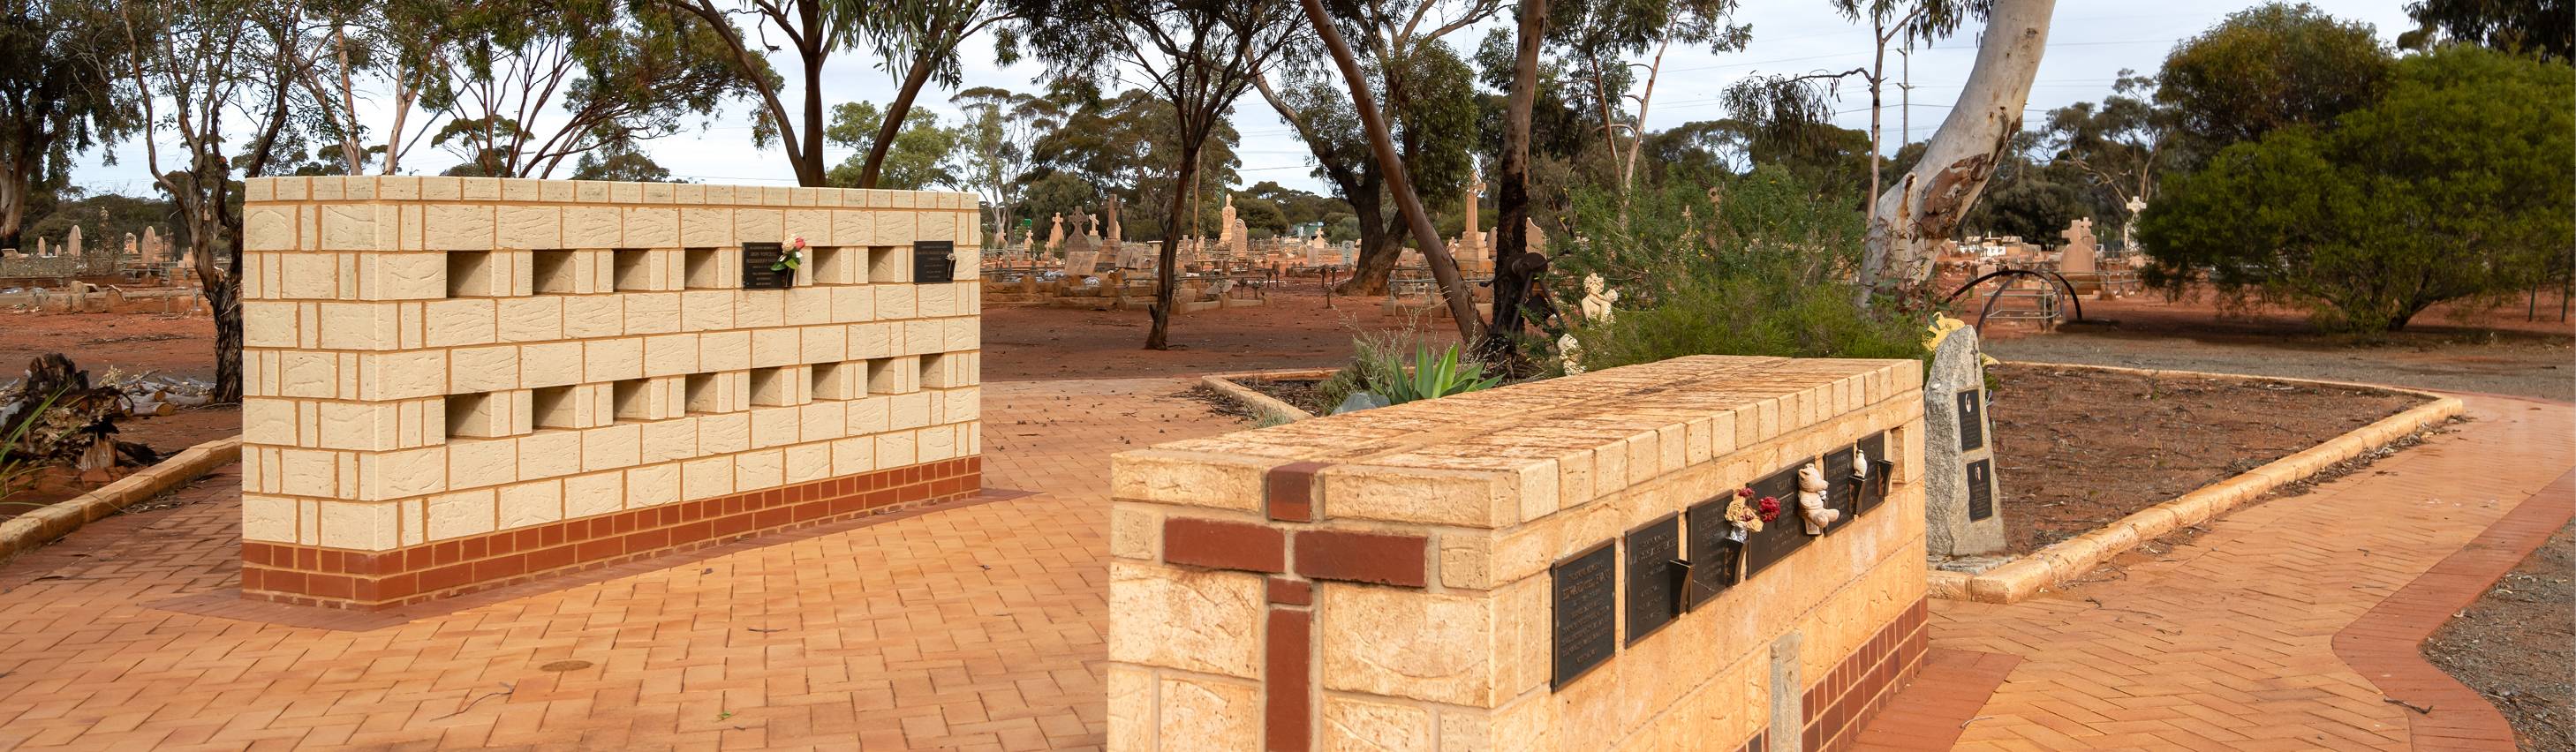 Kalgoorlie Cemetery Board | Policies and Legislation